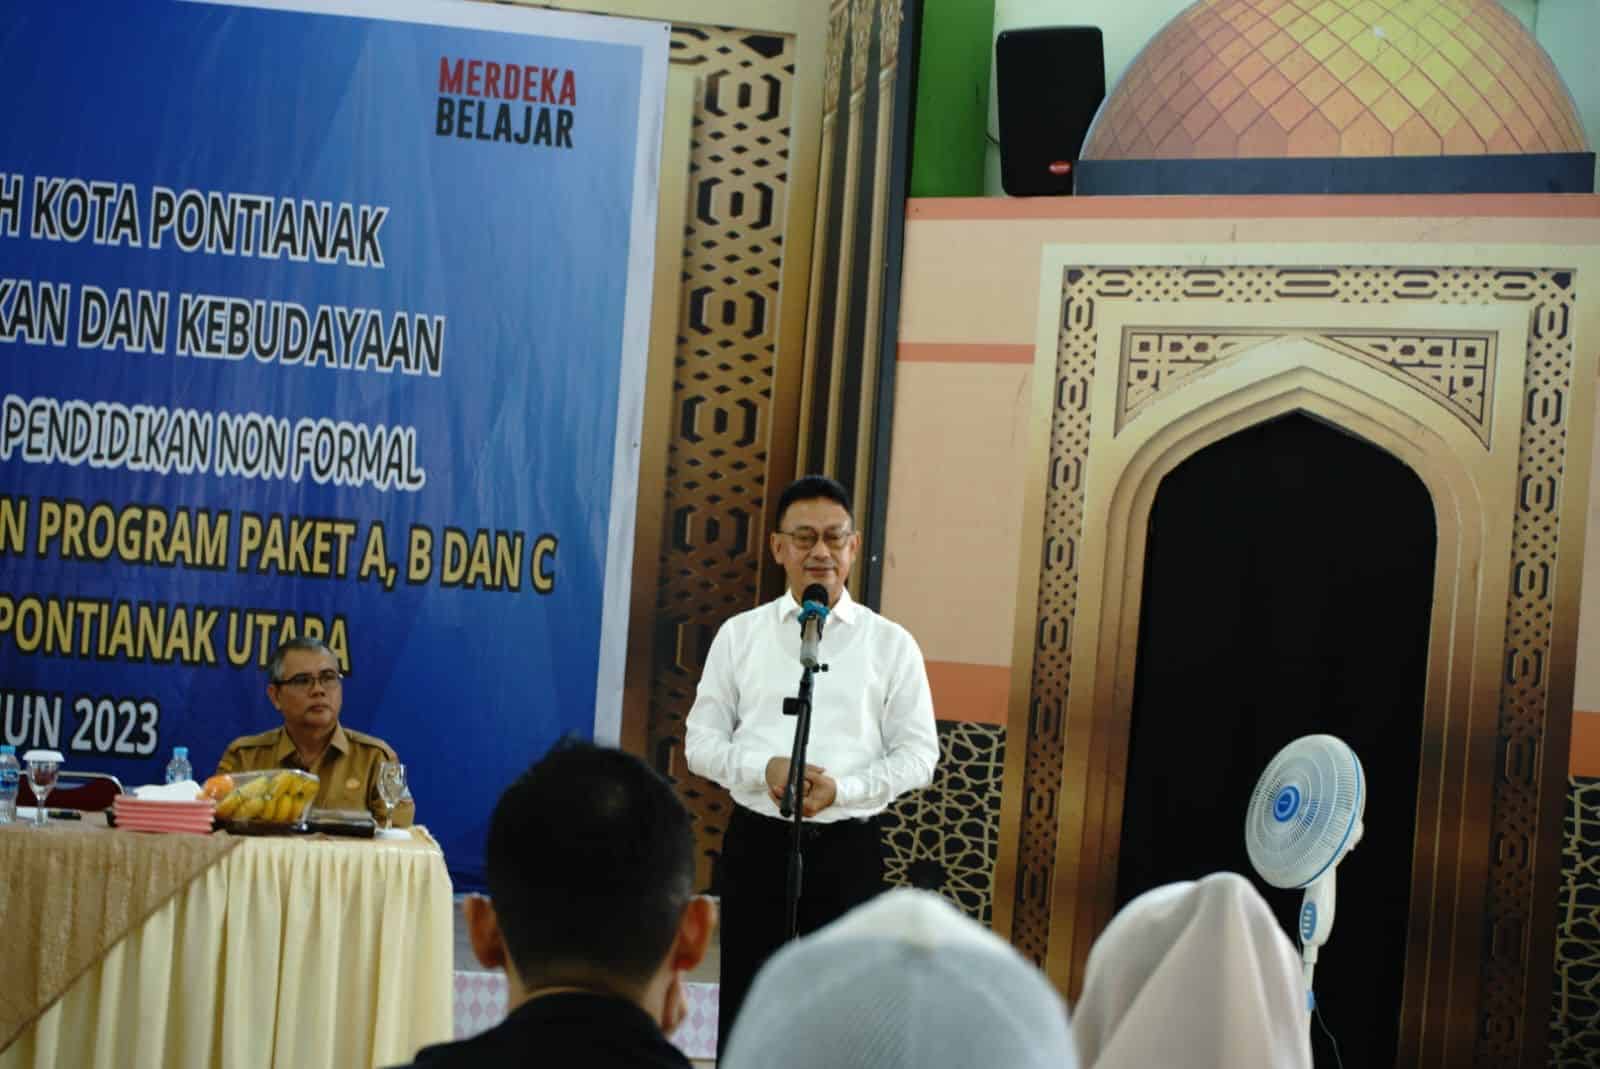 Wali Kota Pontianak, Edi Rusdi Kamtono membuka kegiatan Promosi Satuan Pendidikan Non Formal. (Foto: Prokopim Pontianak)